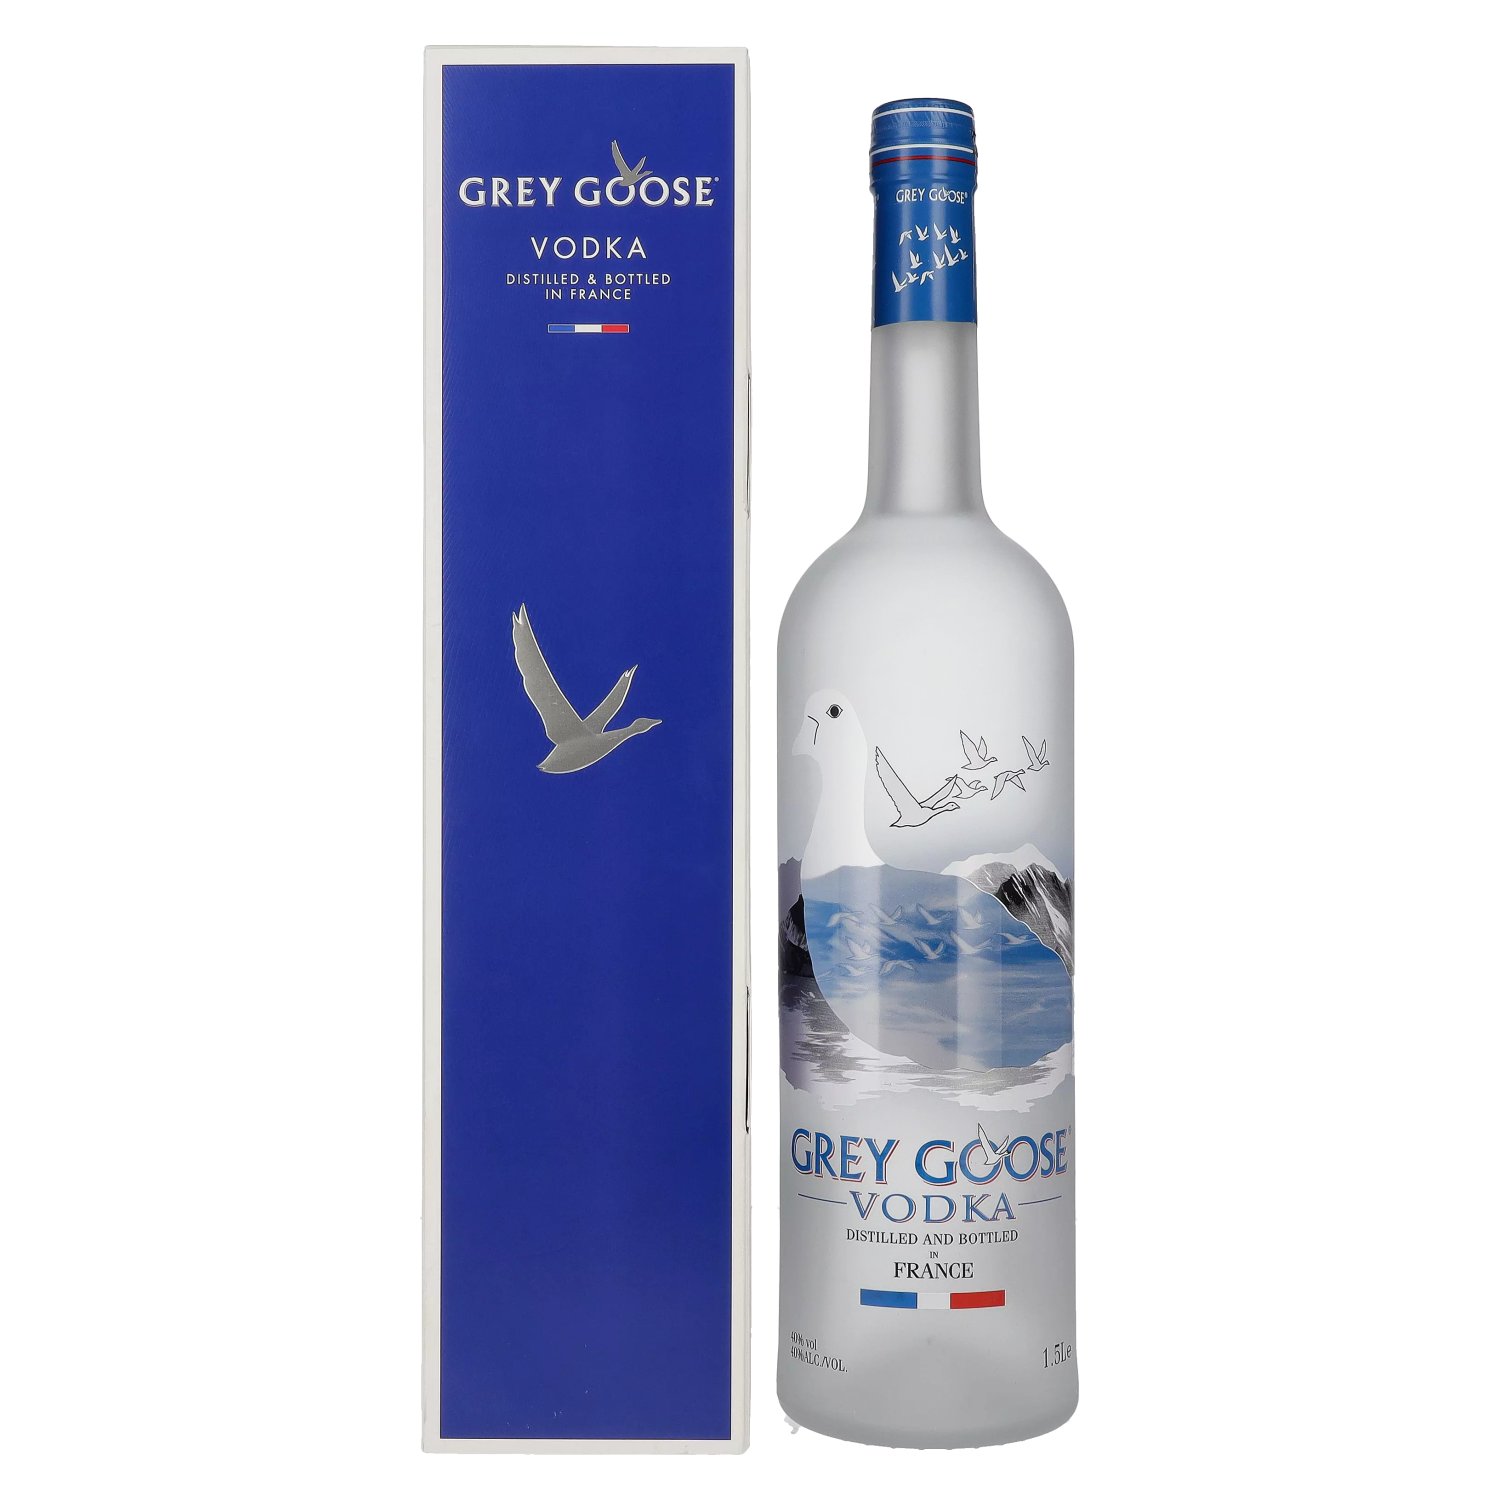 Grey Goose Vodka 40% Vol. 1,5l in Giftbox - delicando